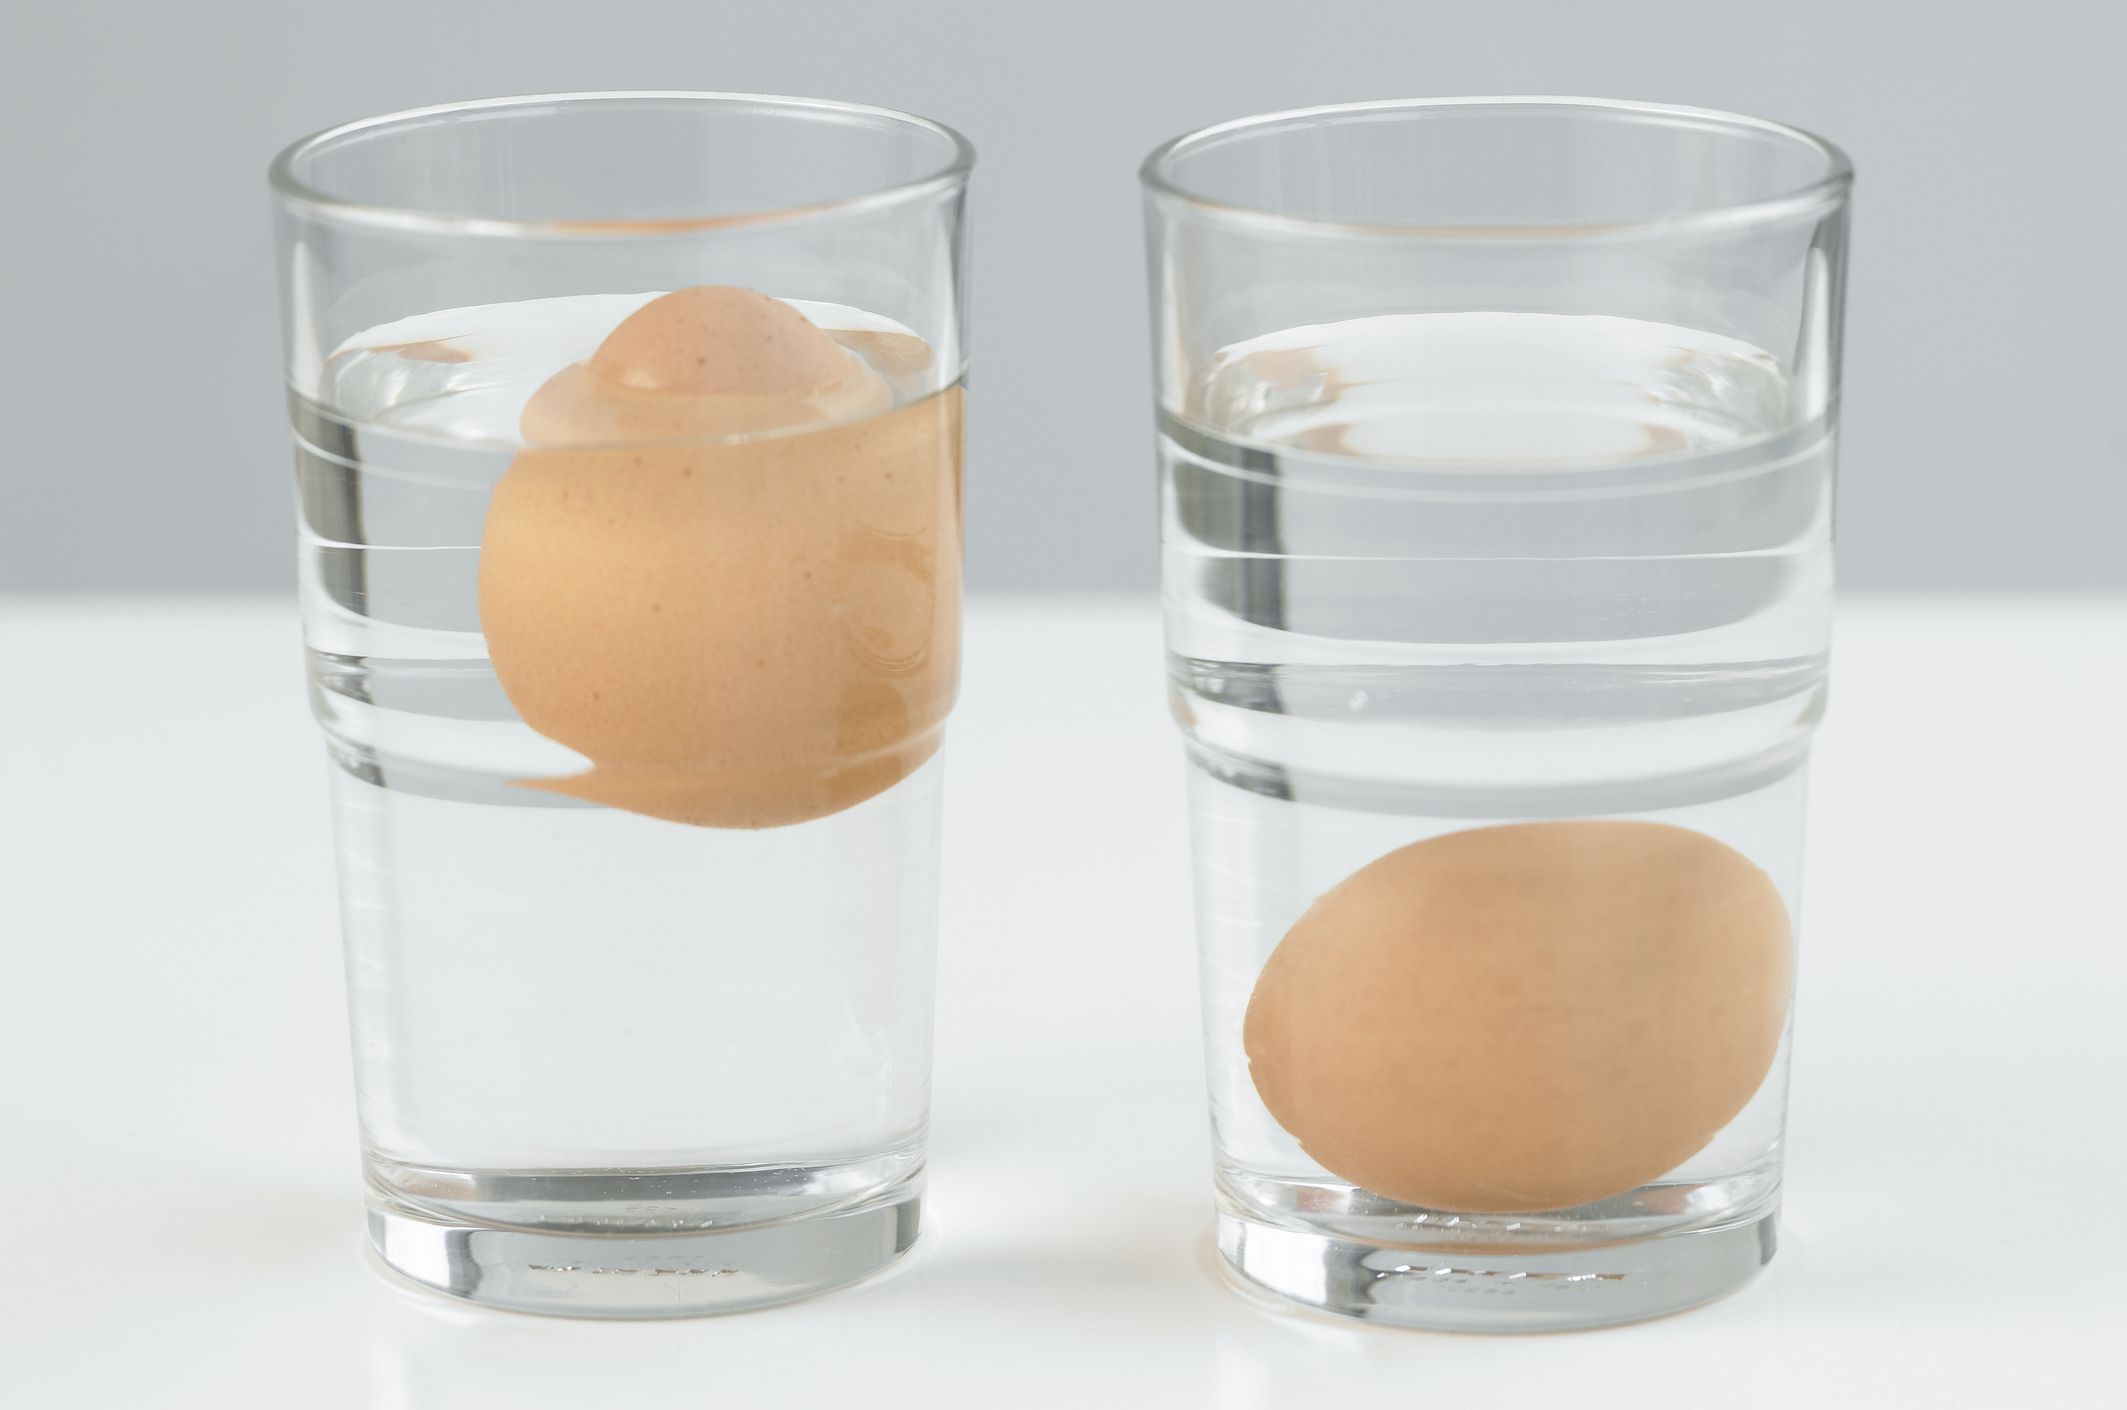 Свежее яйцо плавает или тонет: Как проверить свежесть яиц в воде